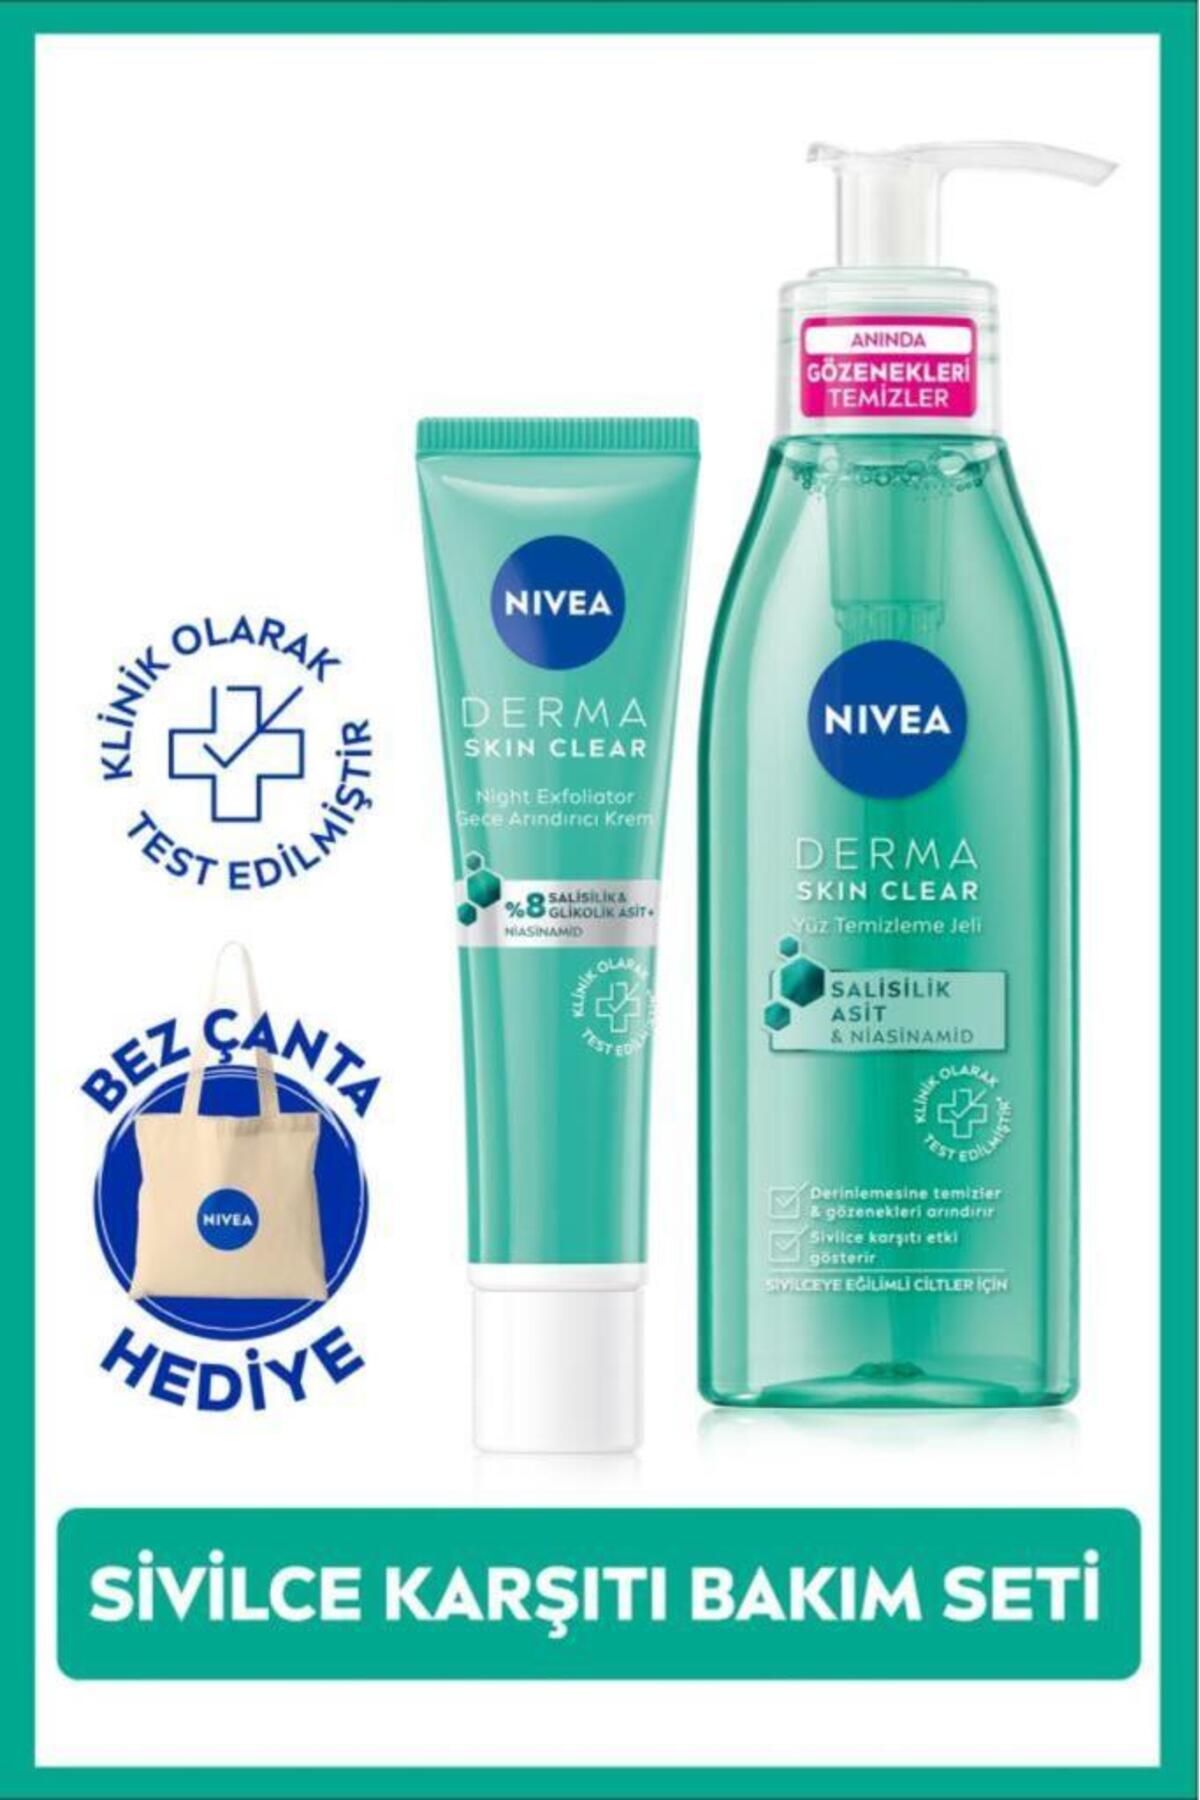 NIVEA Derma Skin Clear Sivilce Karşıtı Yüz Temizleme Jeli 150ml Ve Gece Kremi 40ml,bez Çanta Hediye